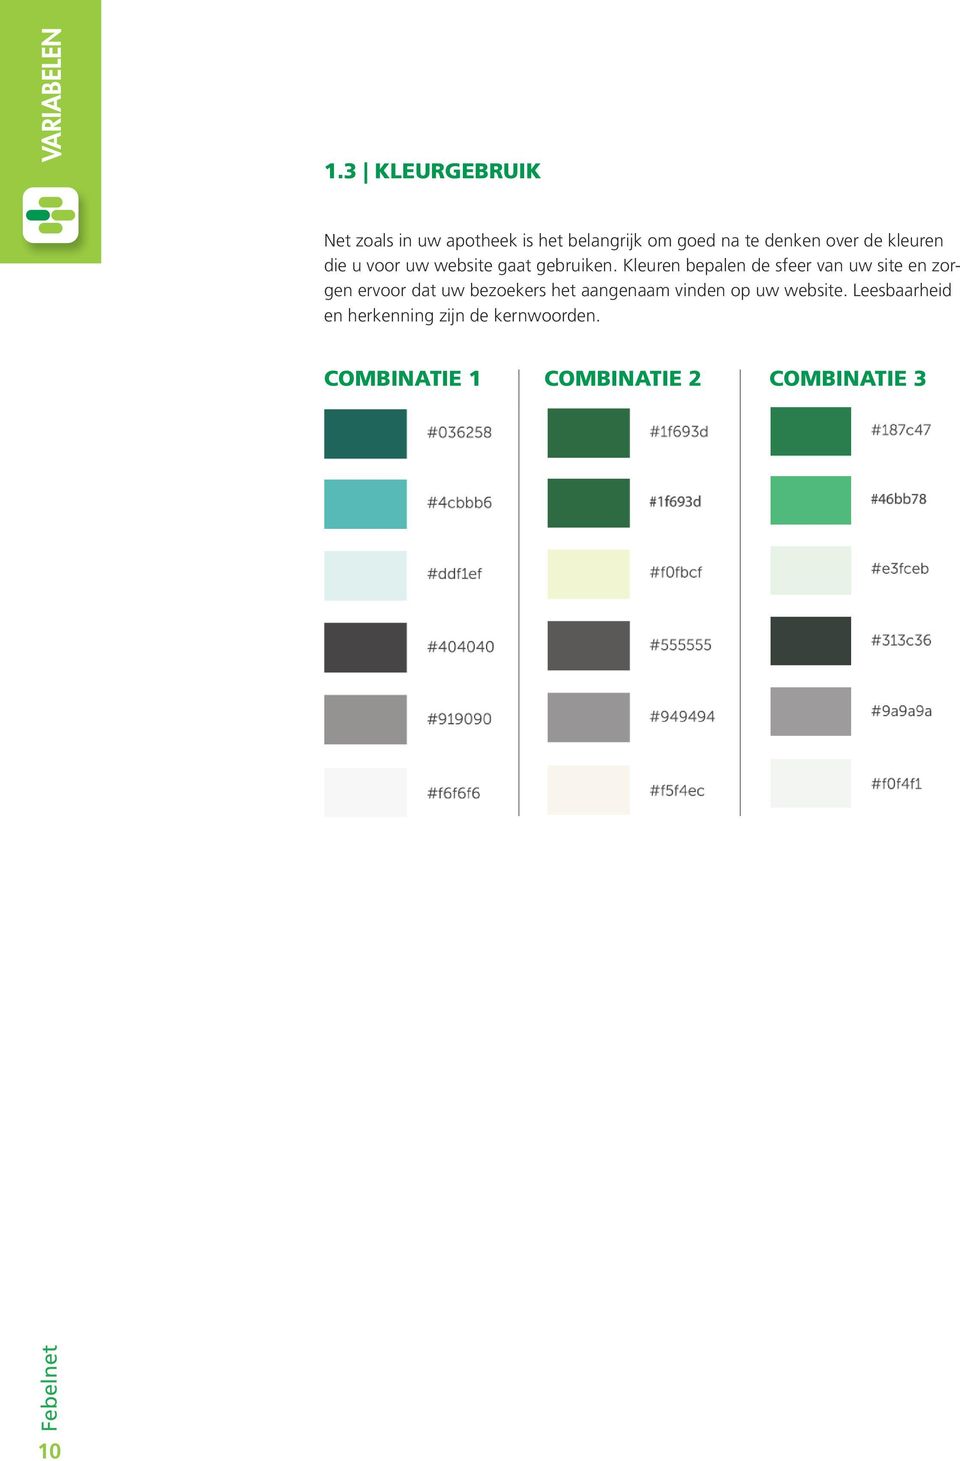 de kleuren die u voor uw website gaat gebruiken.